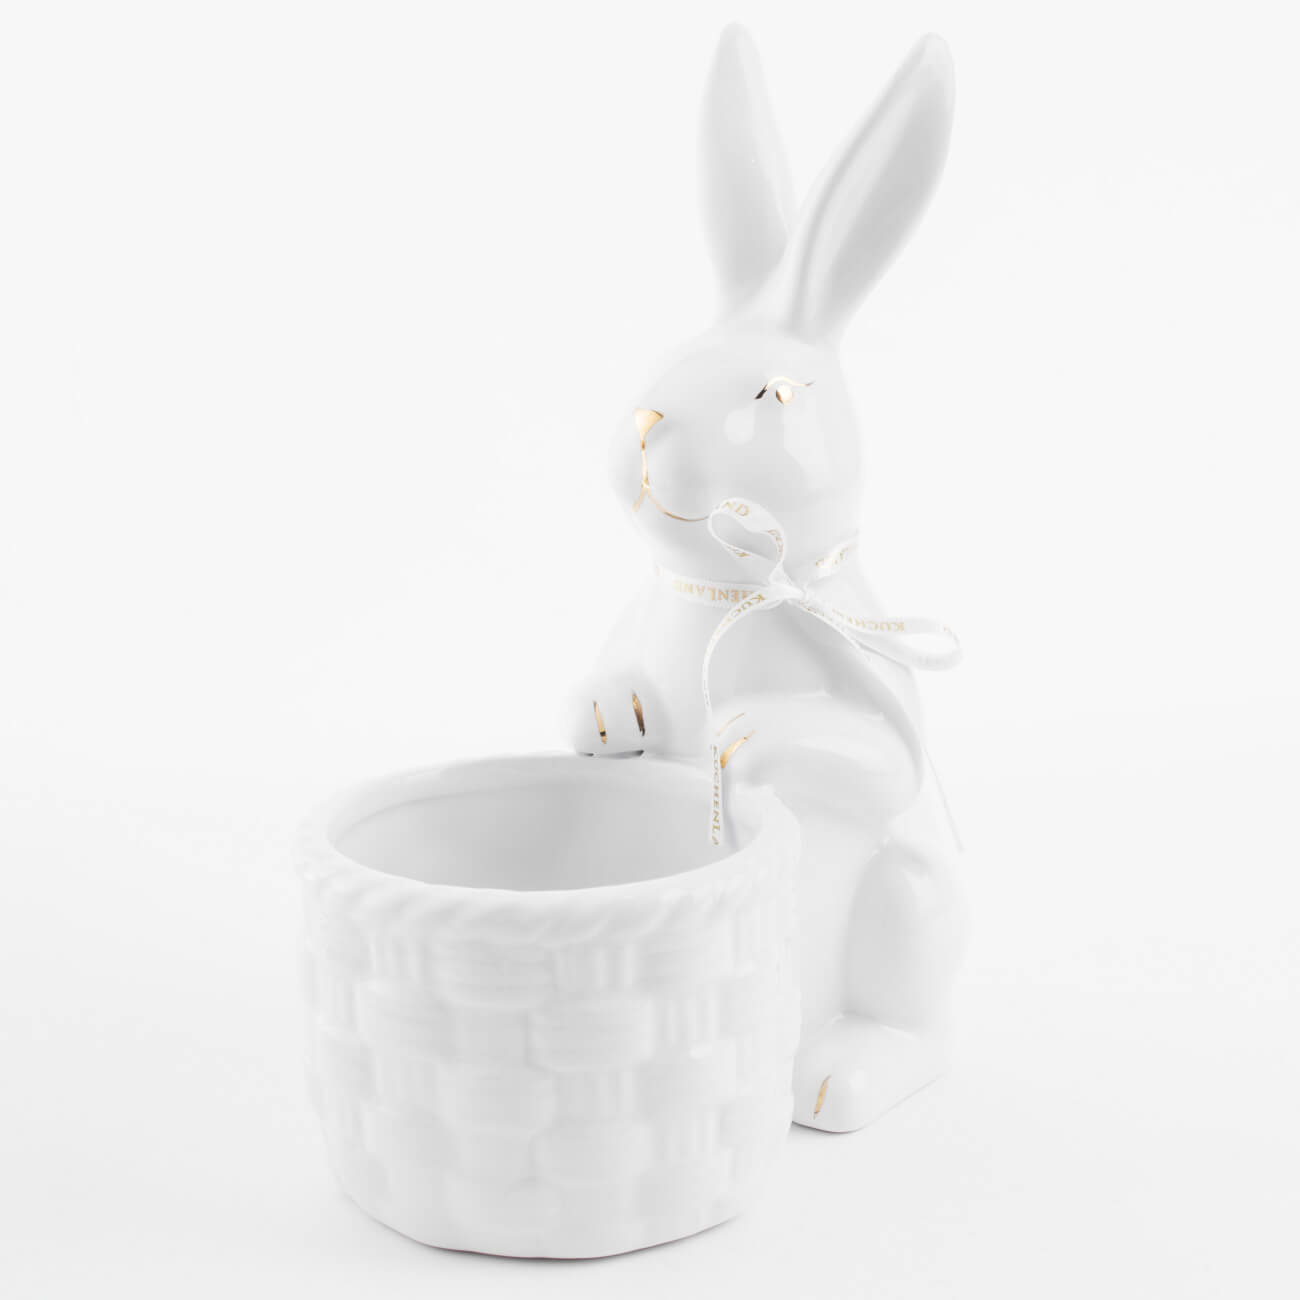 Конфетница, 18x23 см, керамика, бело-золотистая, Кролик с плетенной корзиной, Easter gold конфетница 25х16 см полирезин кролик с корзинкой easter